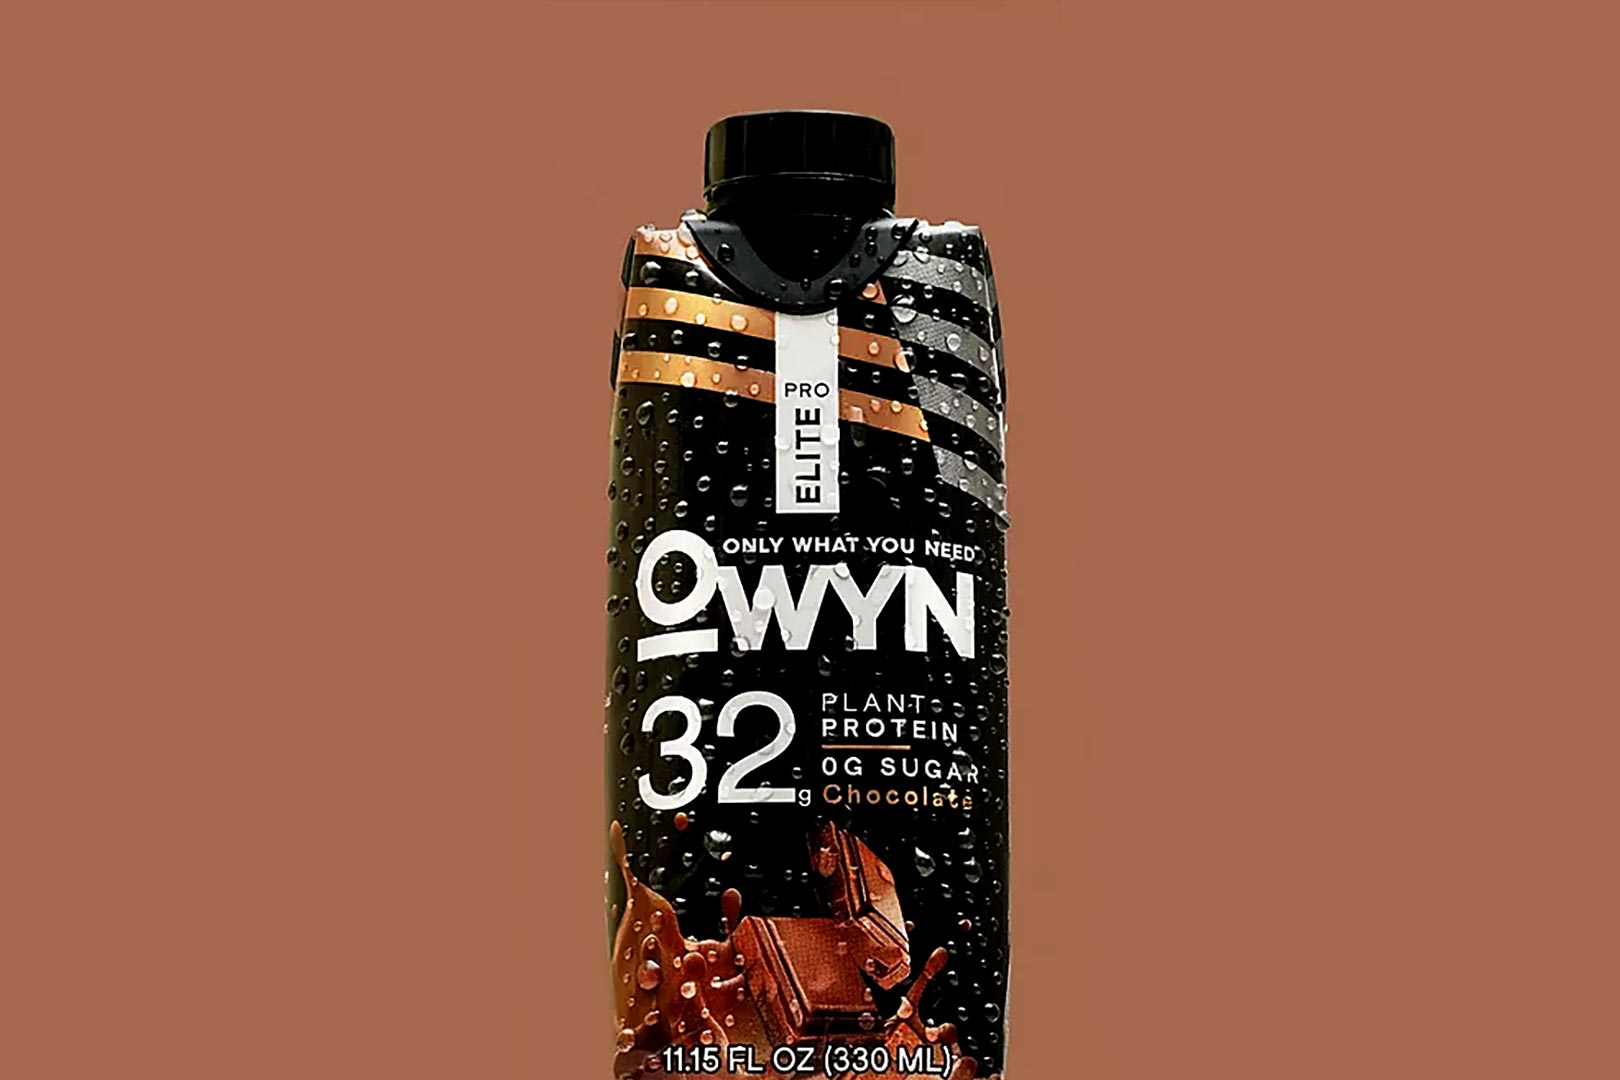 Owyn Pro Elite Protein Shake At Sams Club